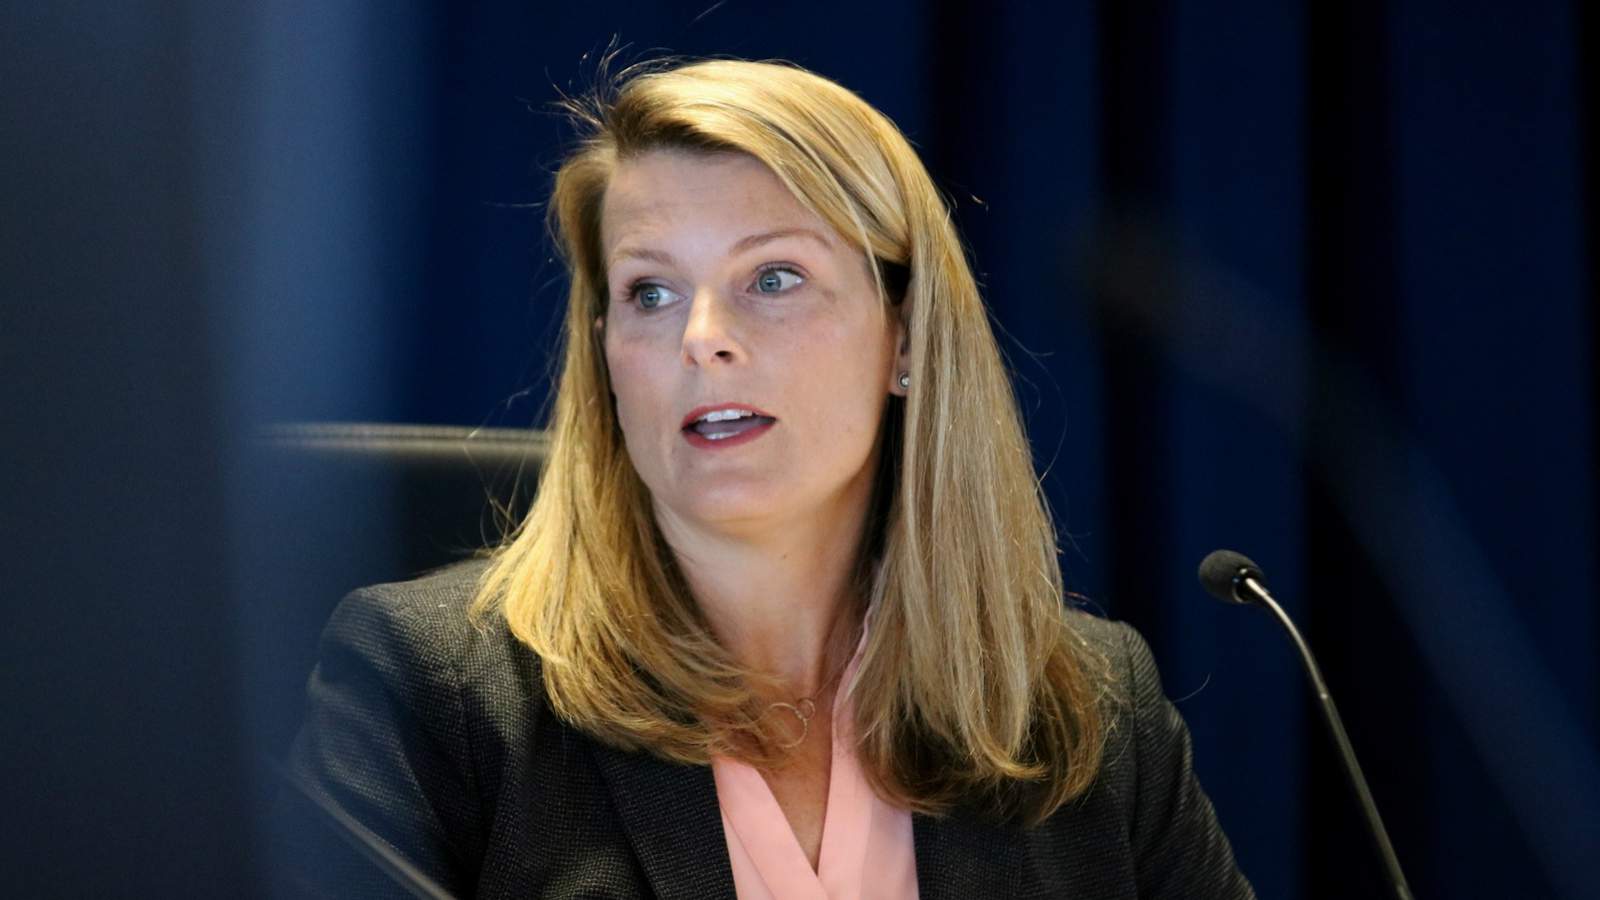 JEA Board fires interim CEO Melissa Dykes